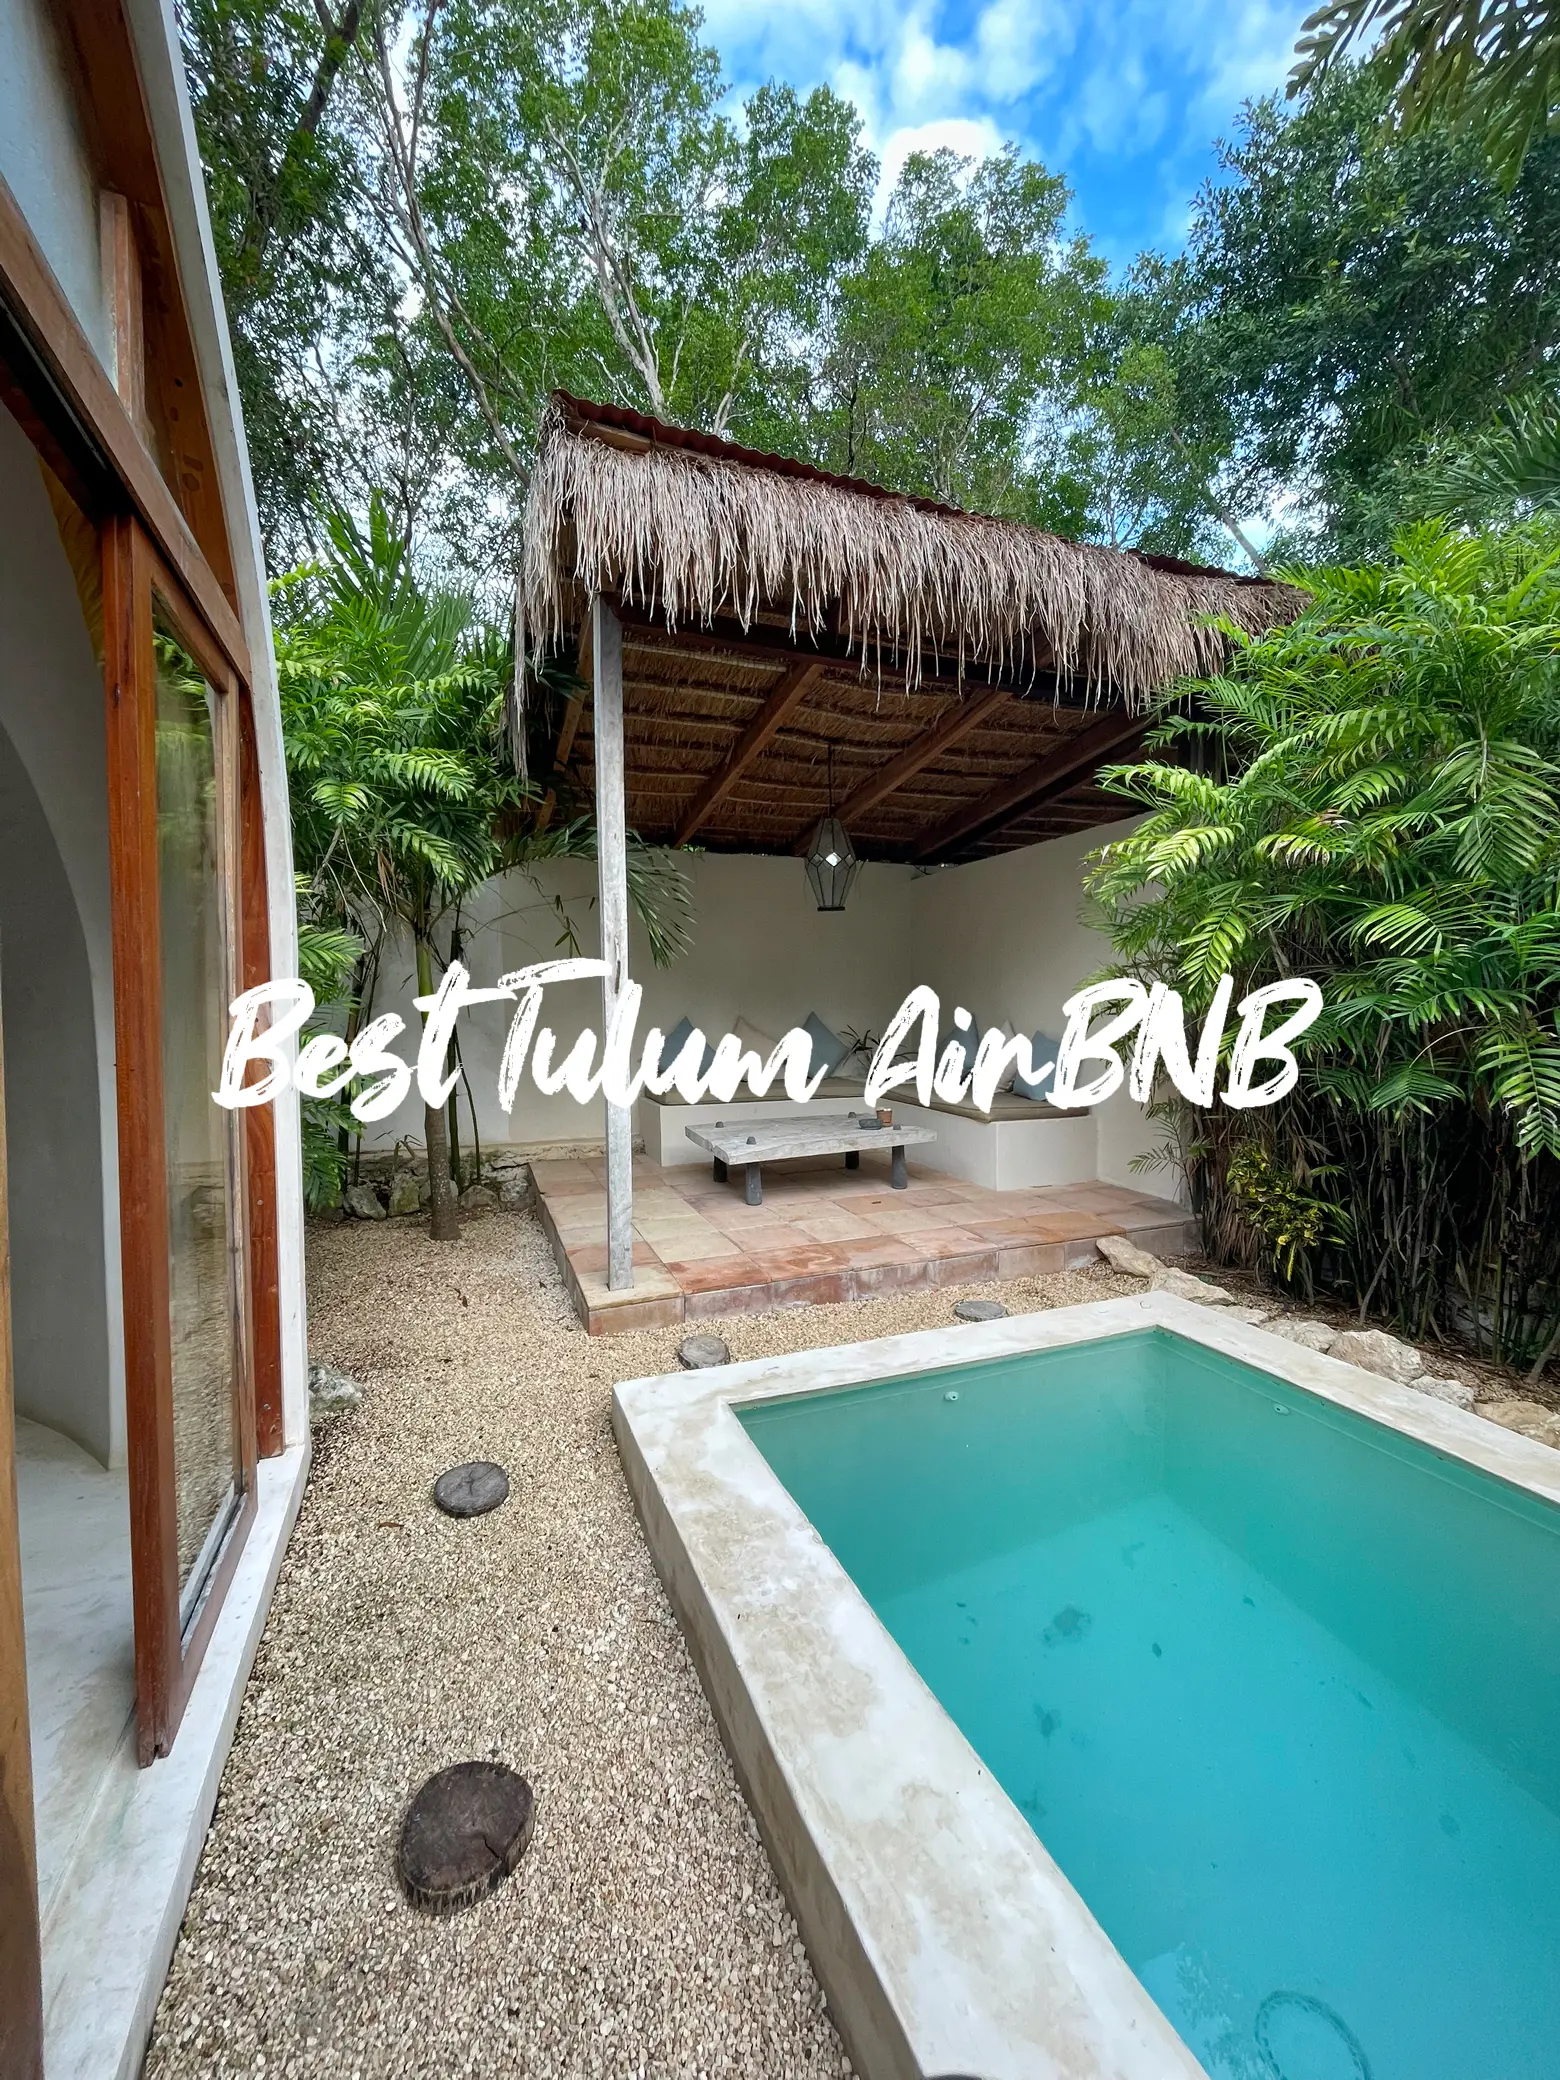 Best Tulum AirBNB 🌴☀️'s images